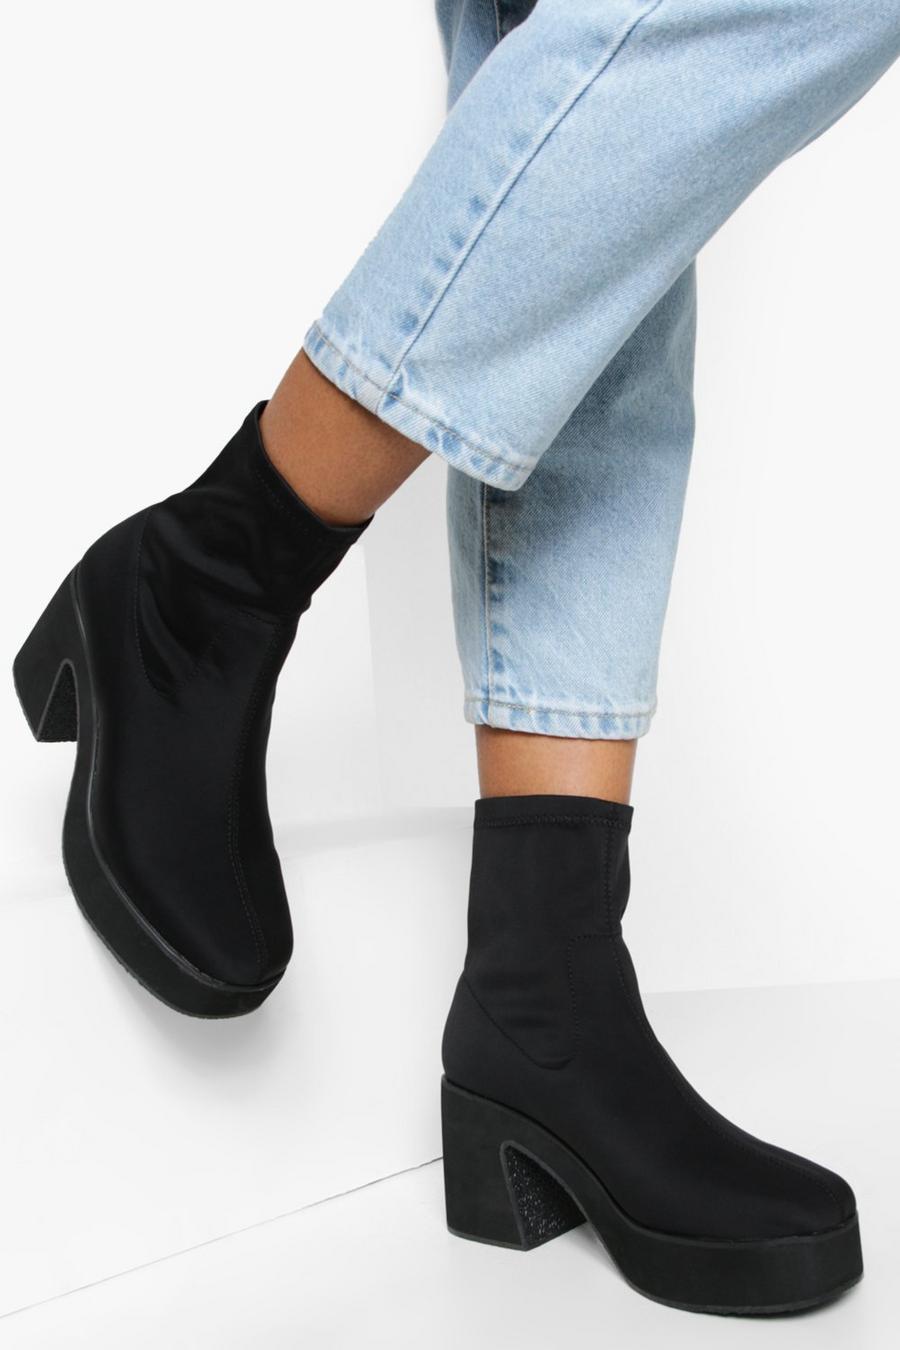 Botas calcetín con plataforma, Black negro